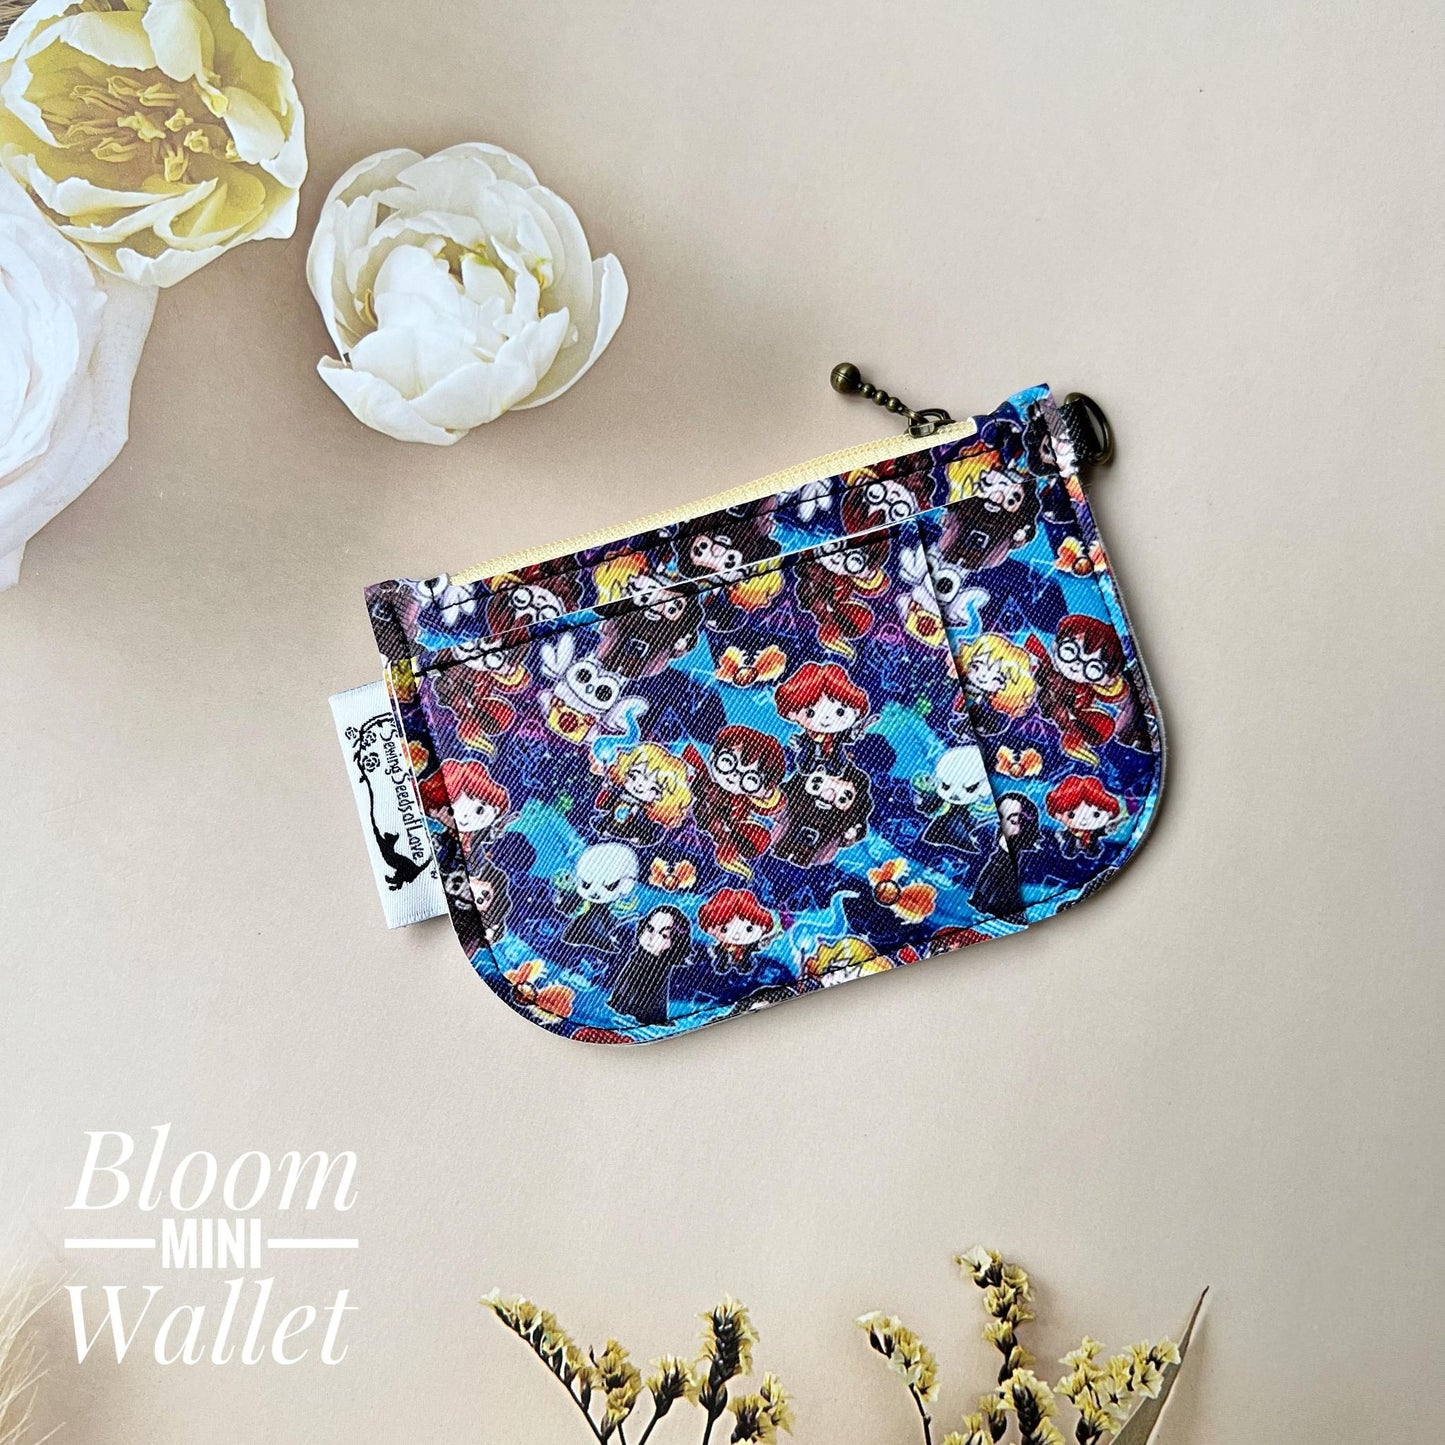 Bloom Mini Wallet - BMW26